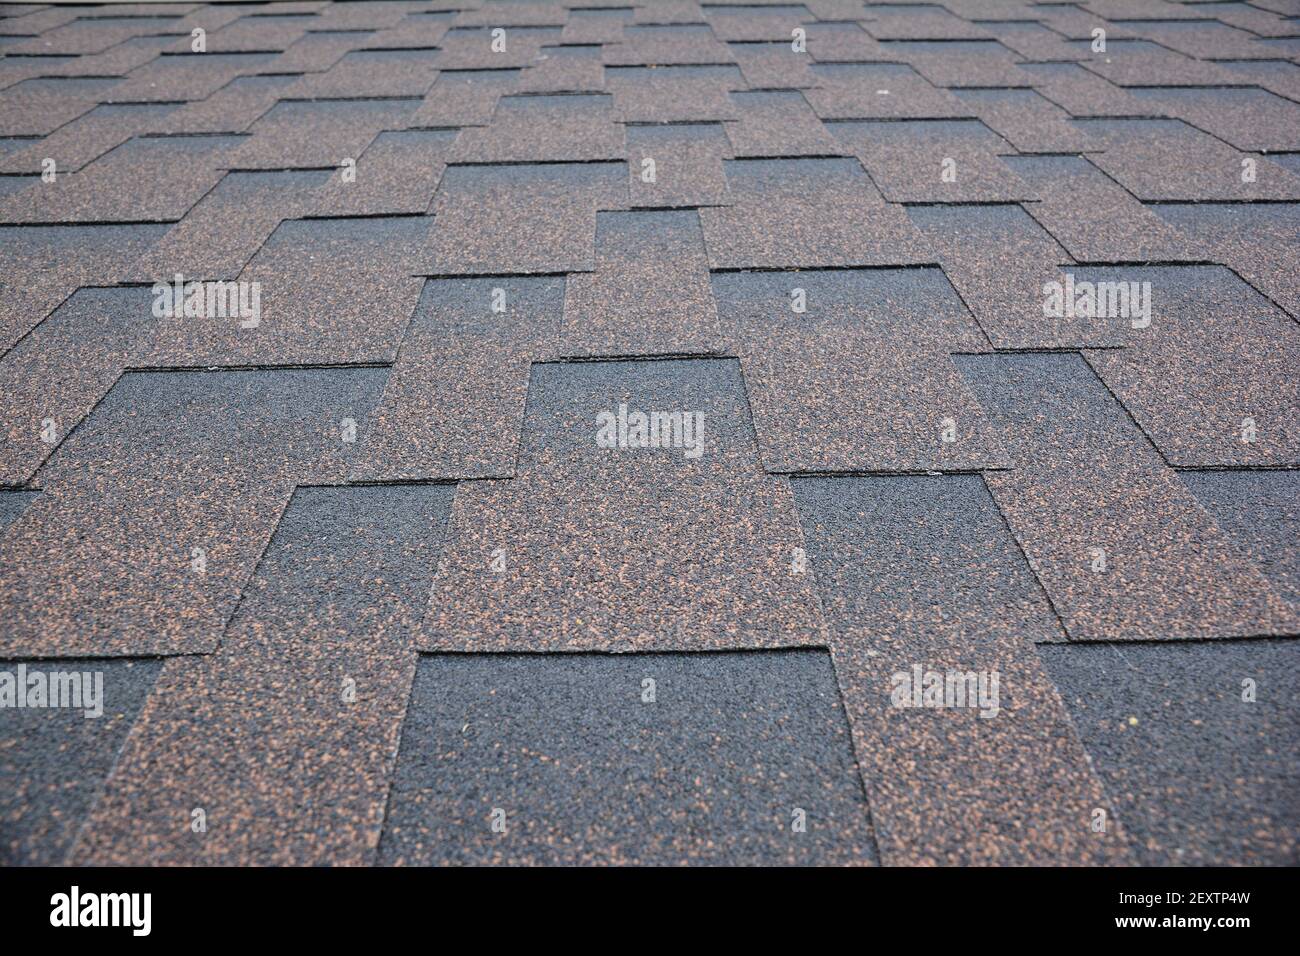 Kupfer braun Dach Asphalt Schindeln Textur Hintergrund. Nahaufnahme eines asphaltierten, dimensionalen oder architektonischen Schindellades. Asphalt-Shi Stockfoto